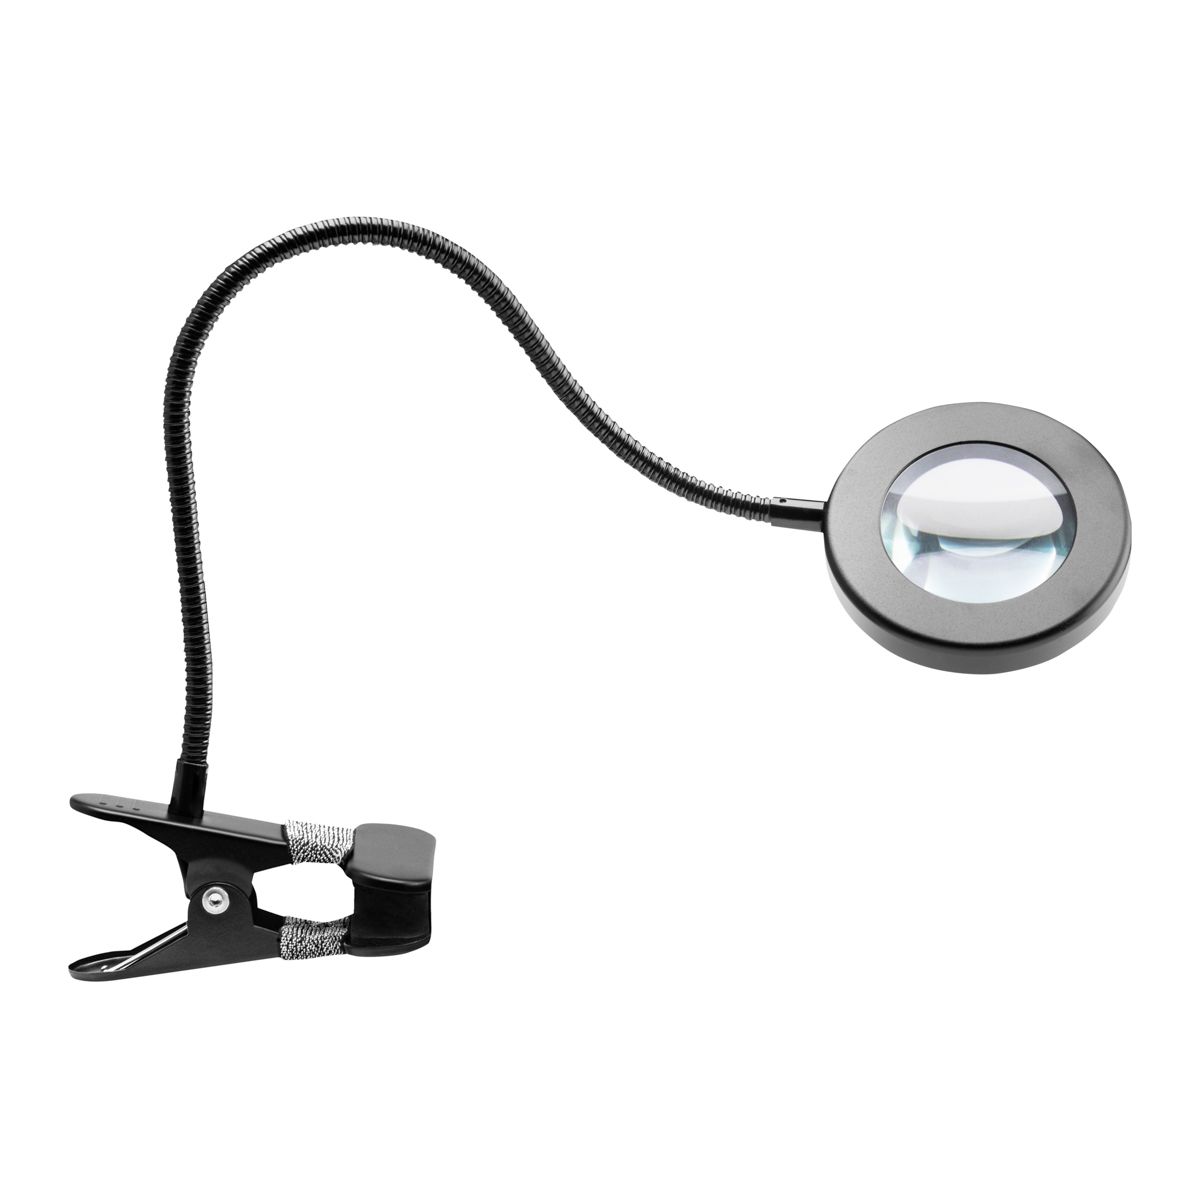 SNAKE RING LED LAMP LAMP ON A DESK BLACK